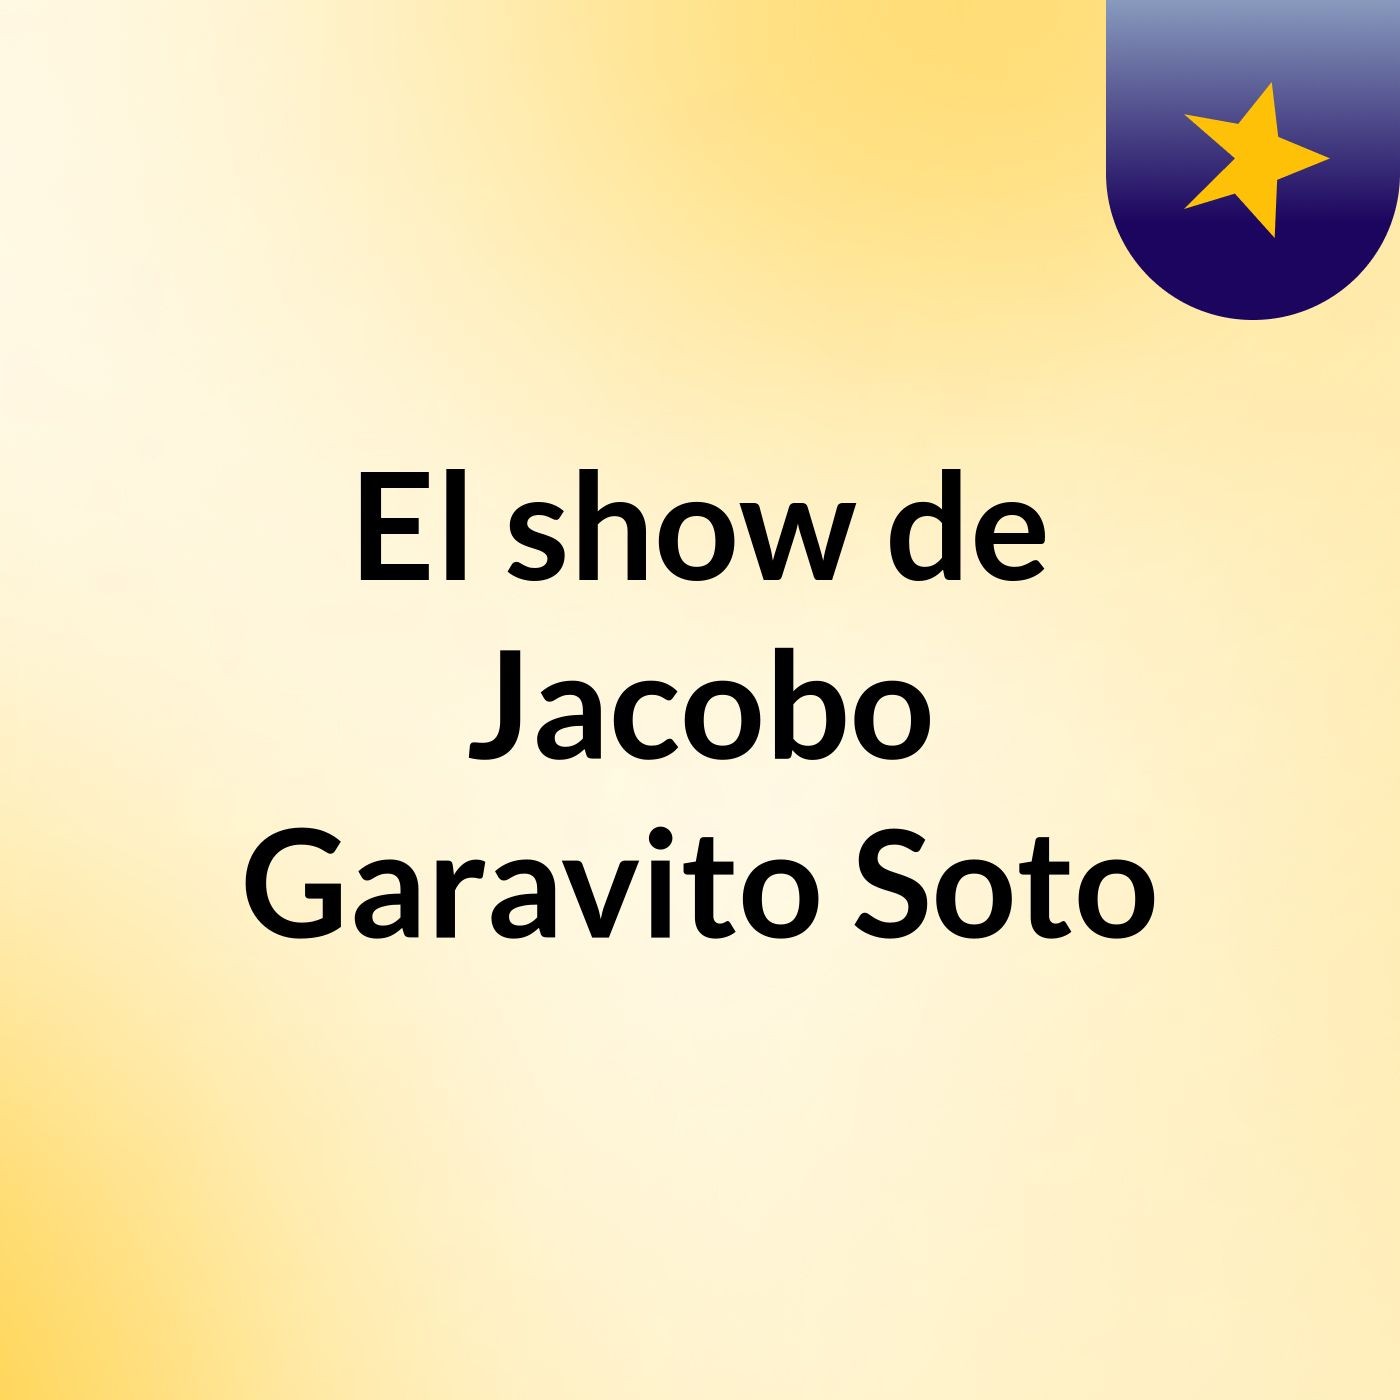 El show de Jacobo Garavito Soto